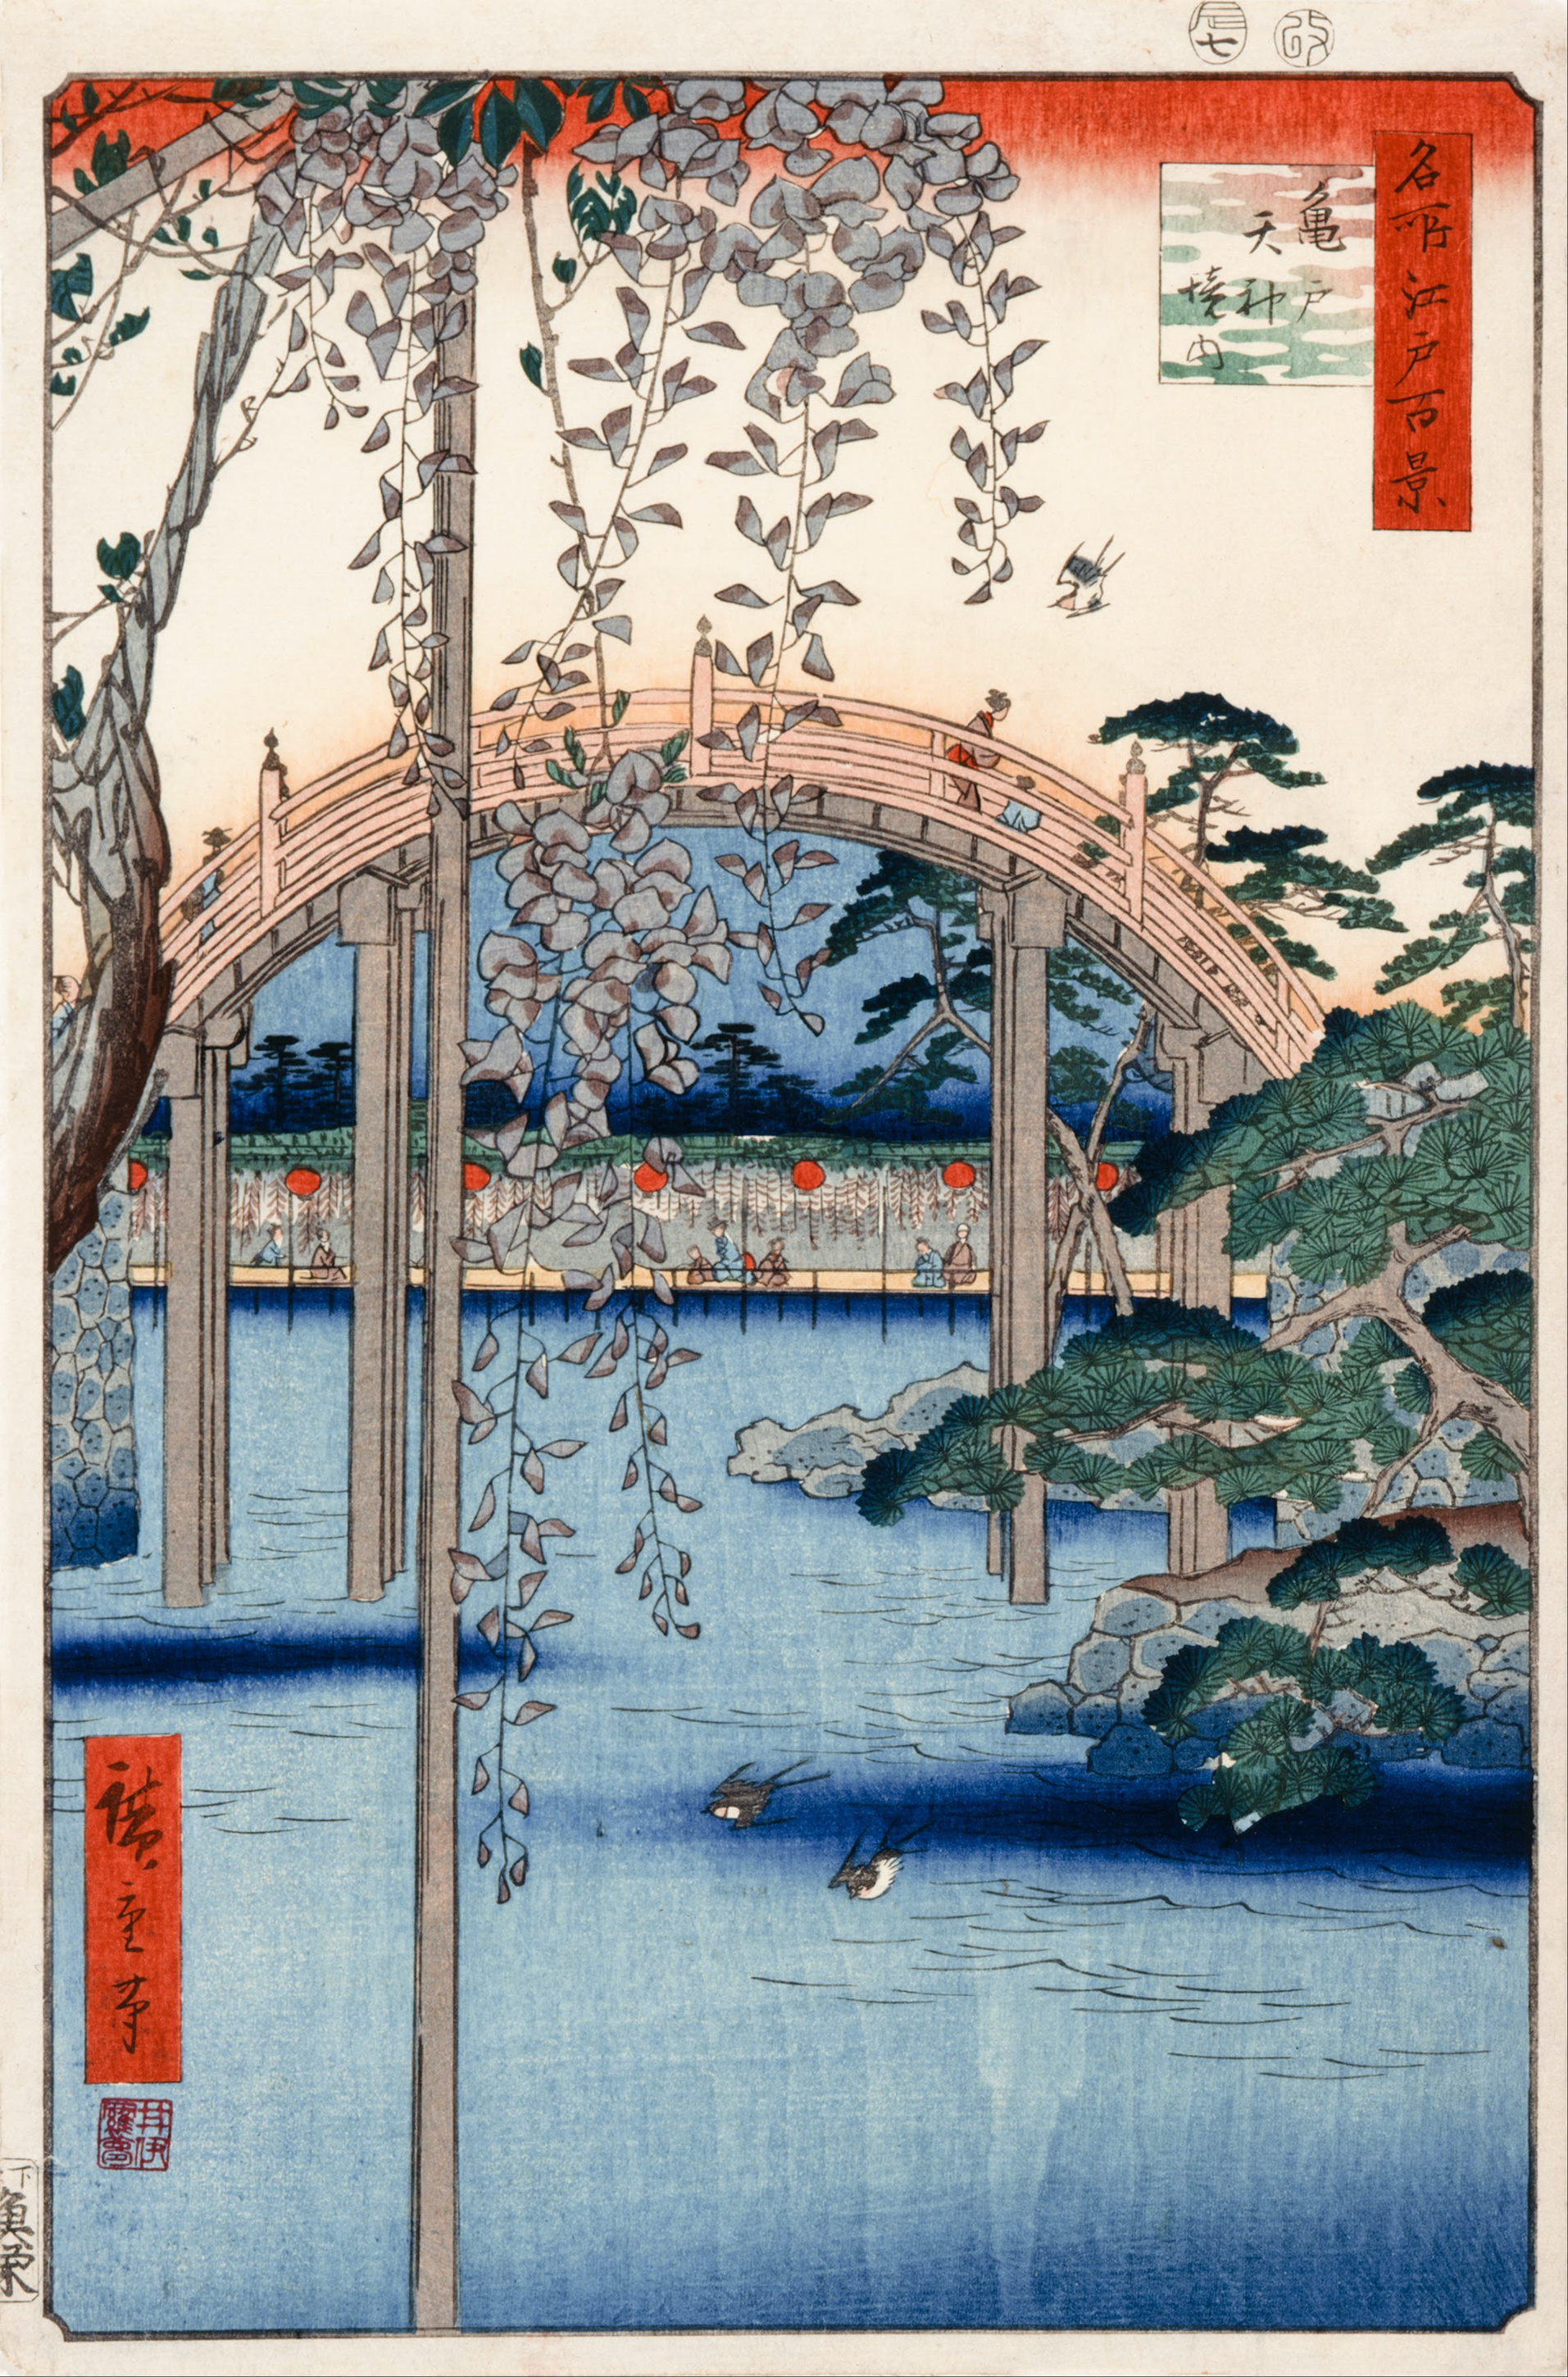 57景 亀戸天神境内 by  Hiroshige - 1856年 - 34 x 22.9 cm 